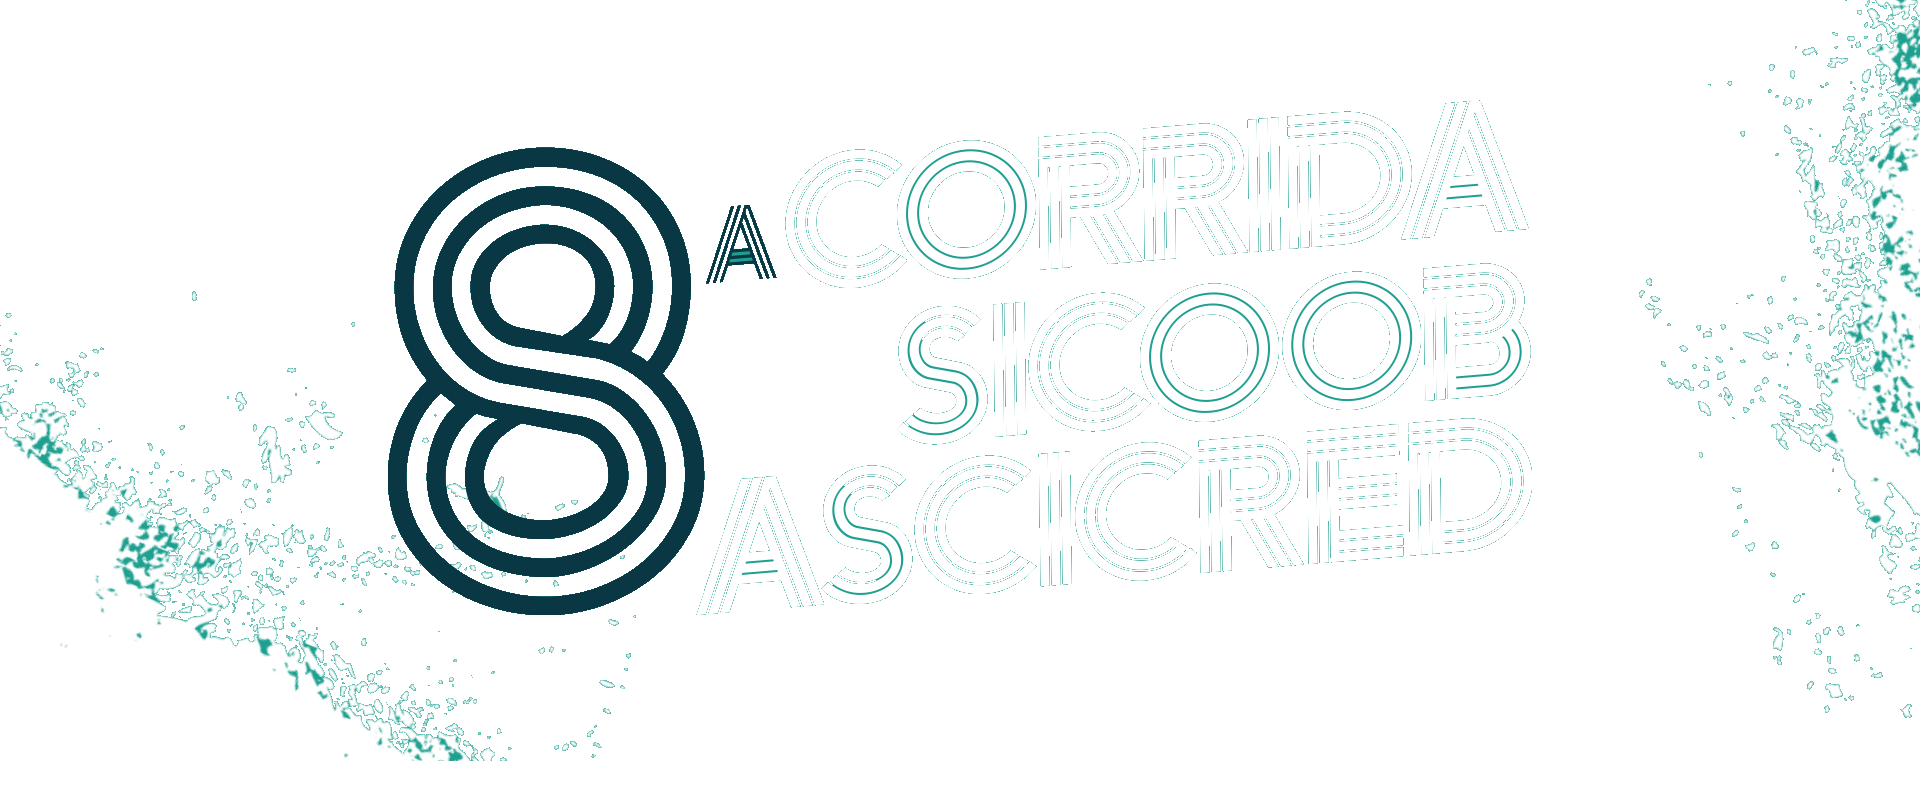 8ª Corrida Sicoob Ascicred